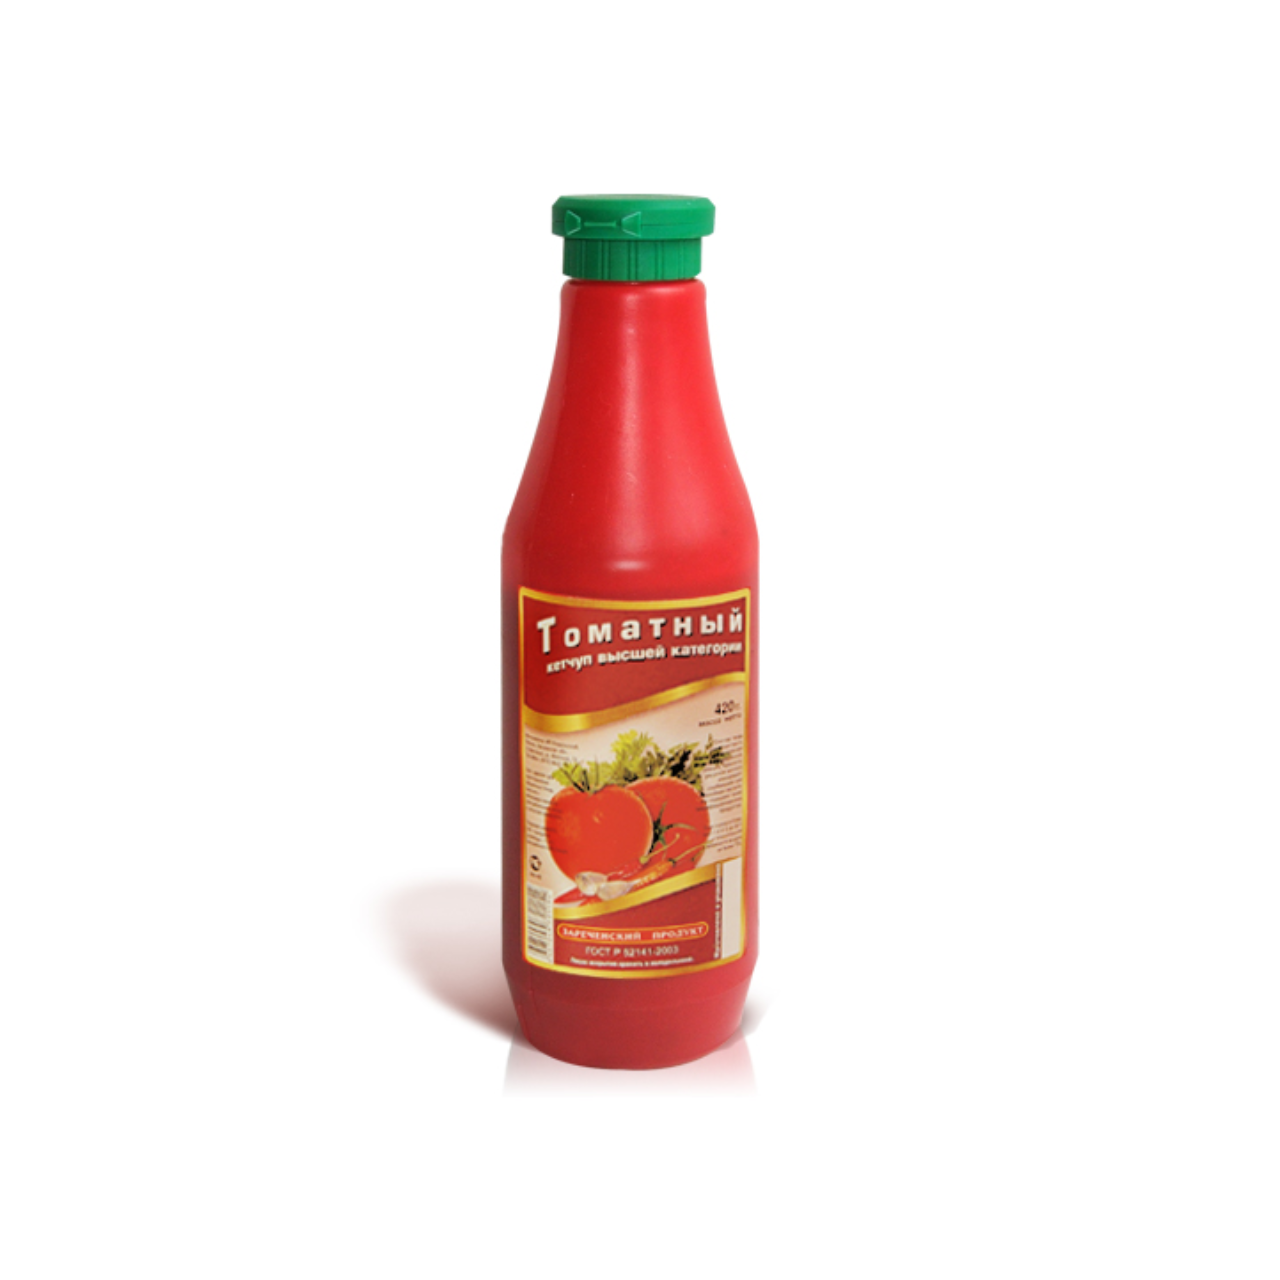 Кетчуп Зареченский продукт 420 г ПЭТ томатный